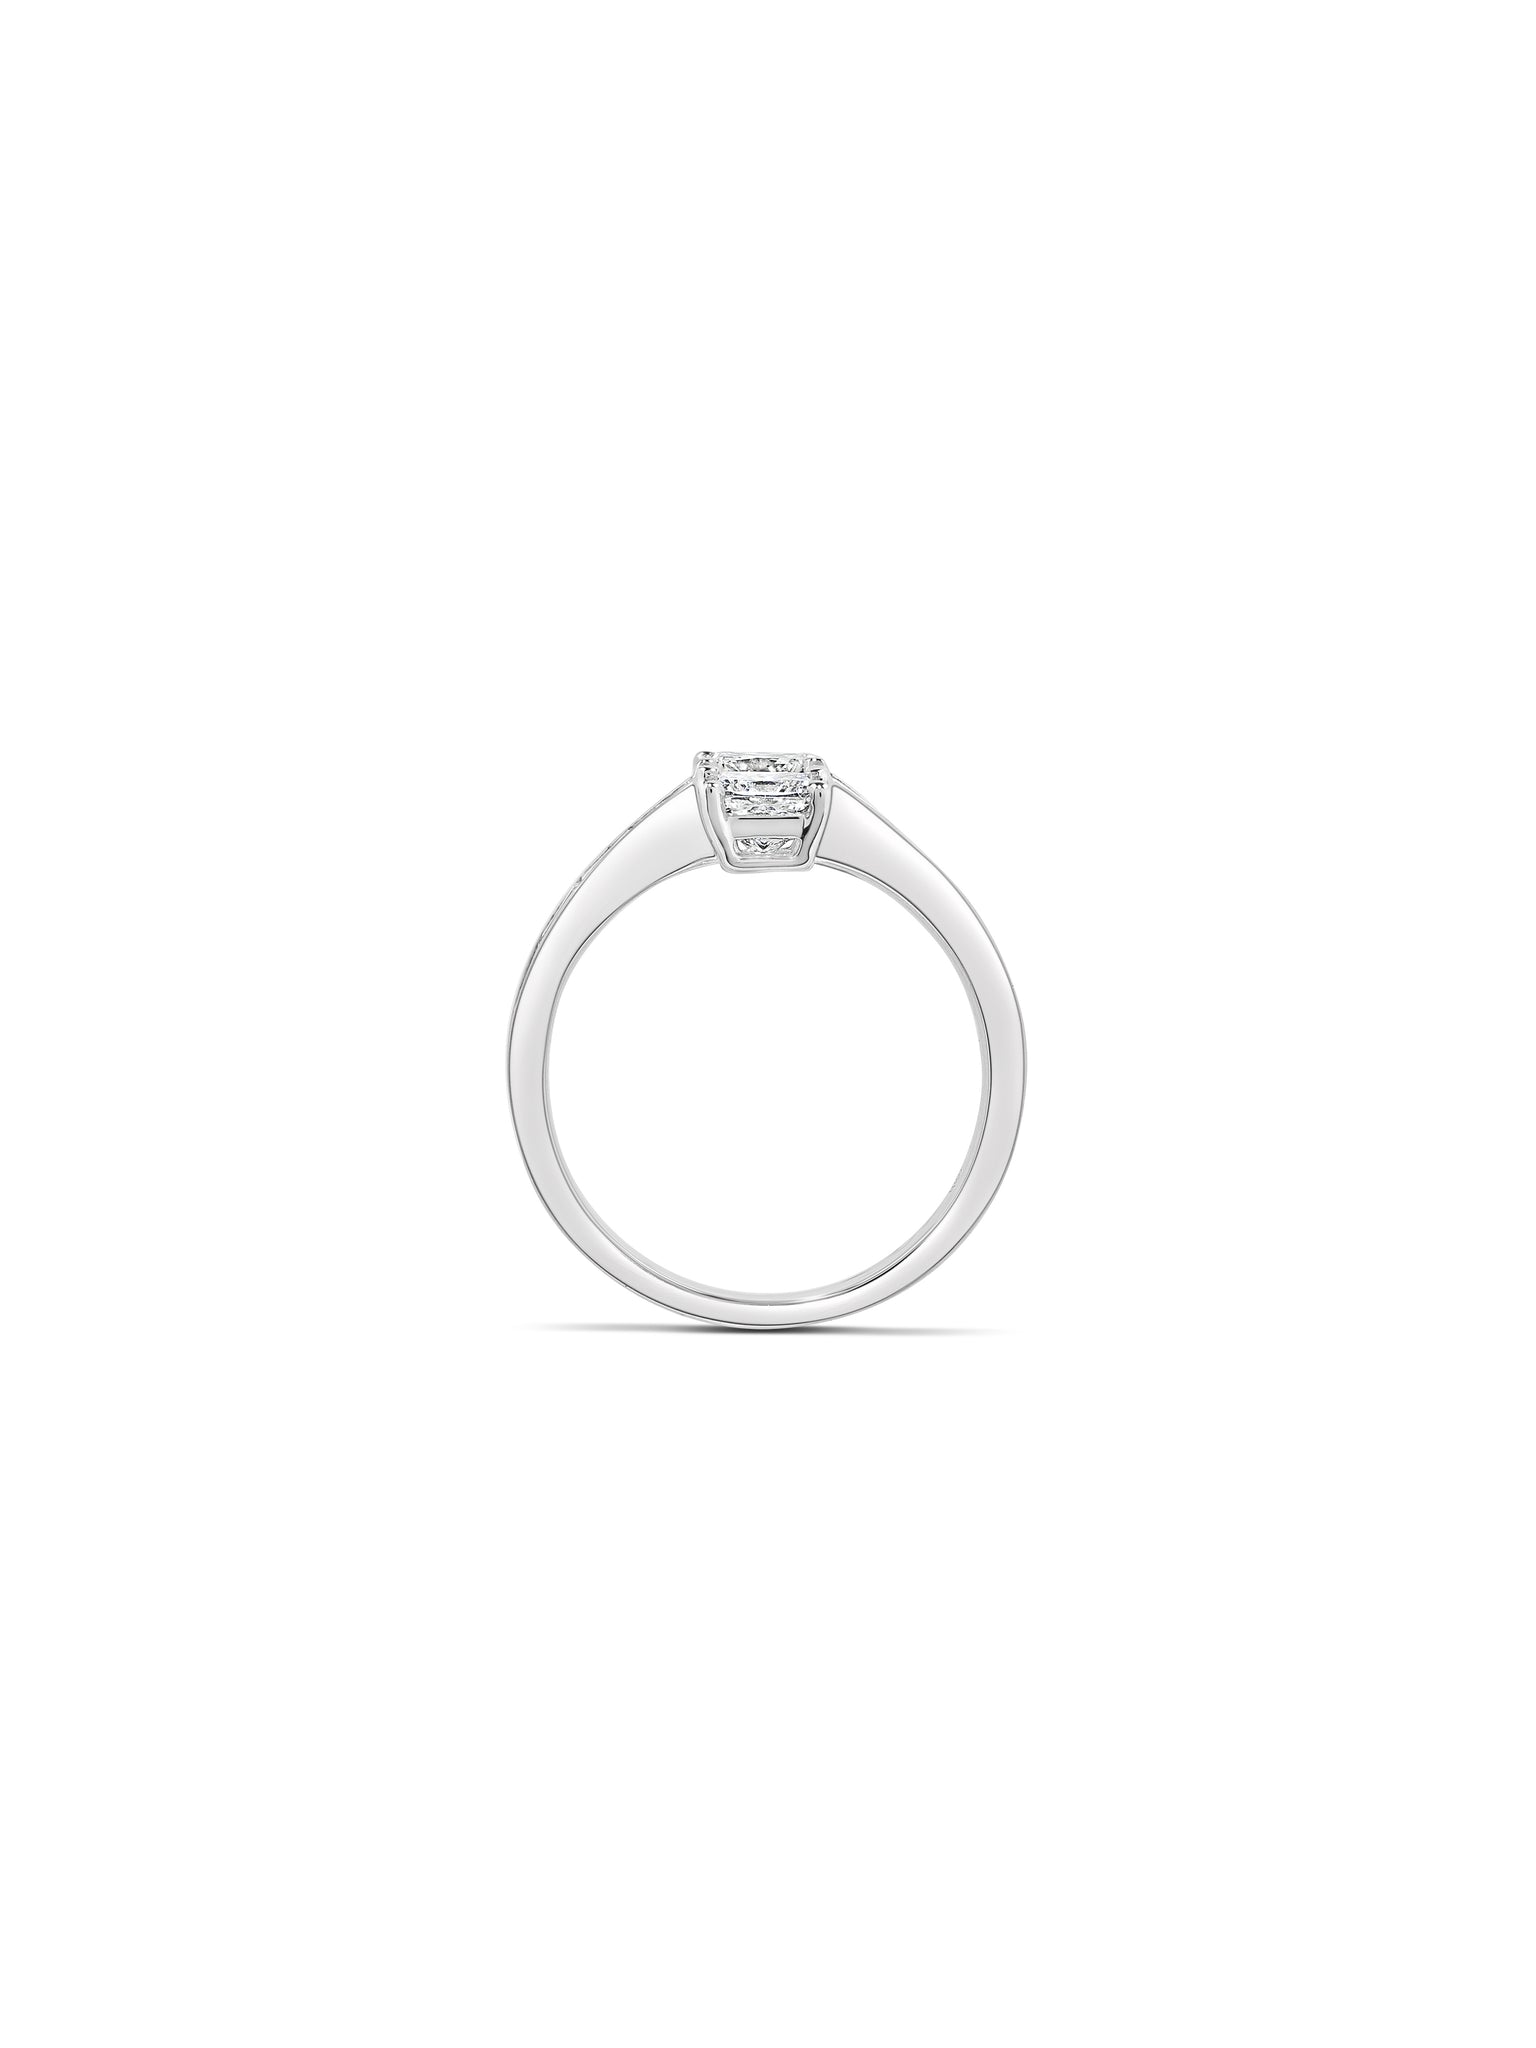 Equinox Princess Diamond Ring